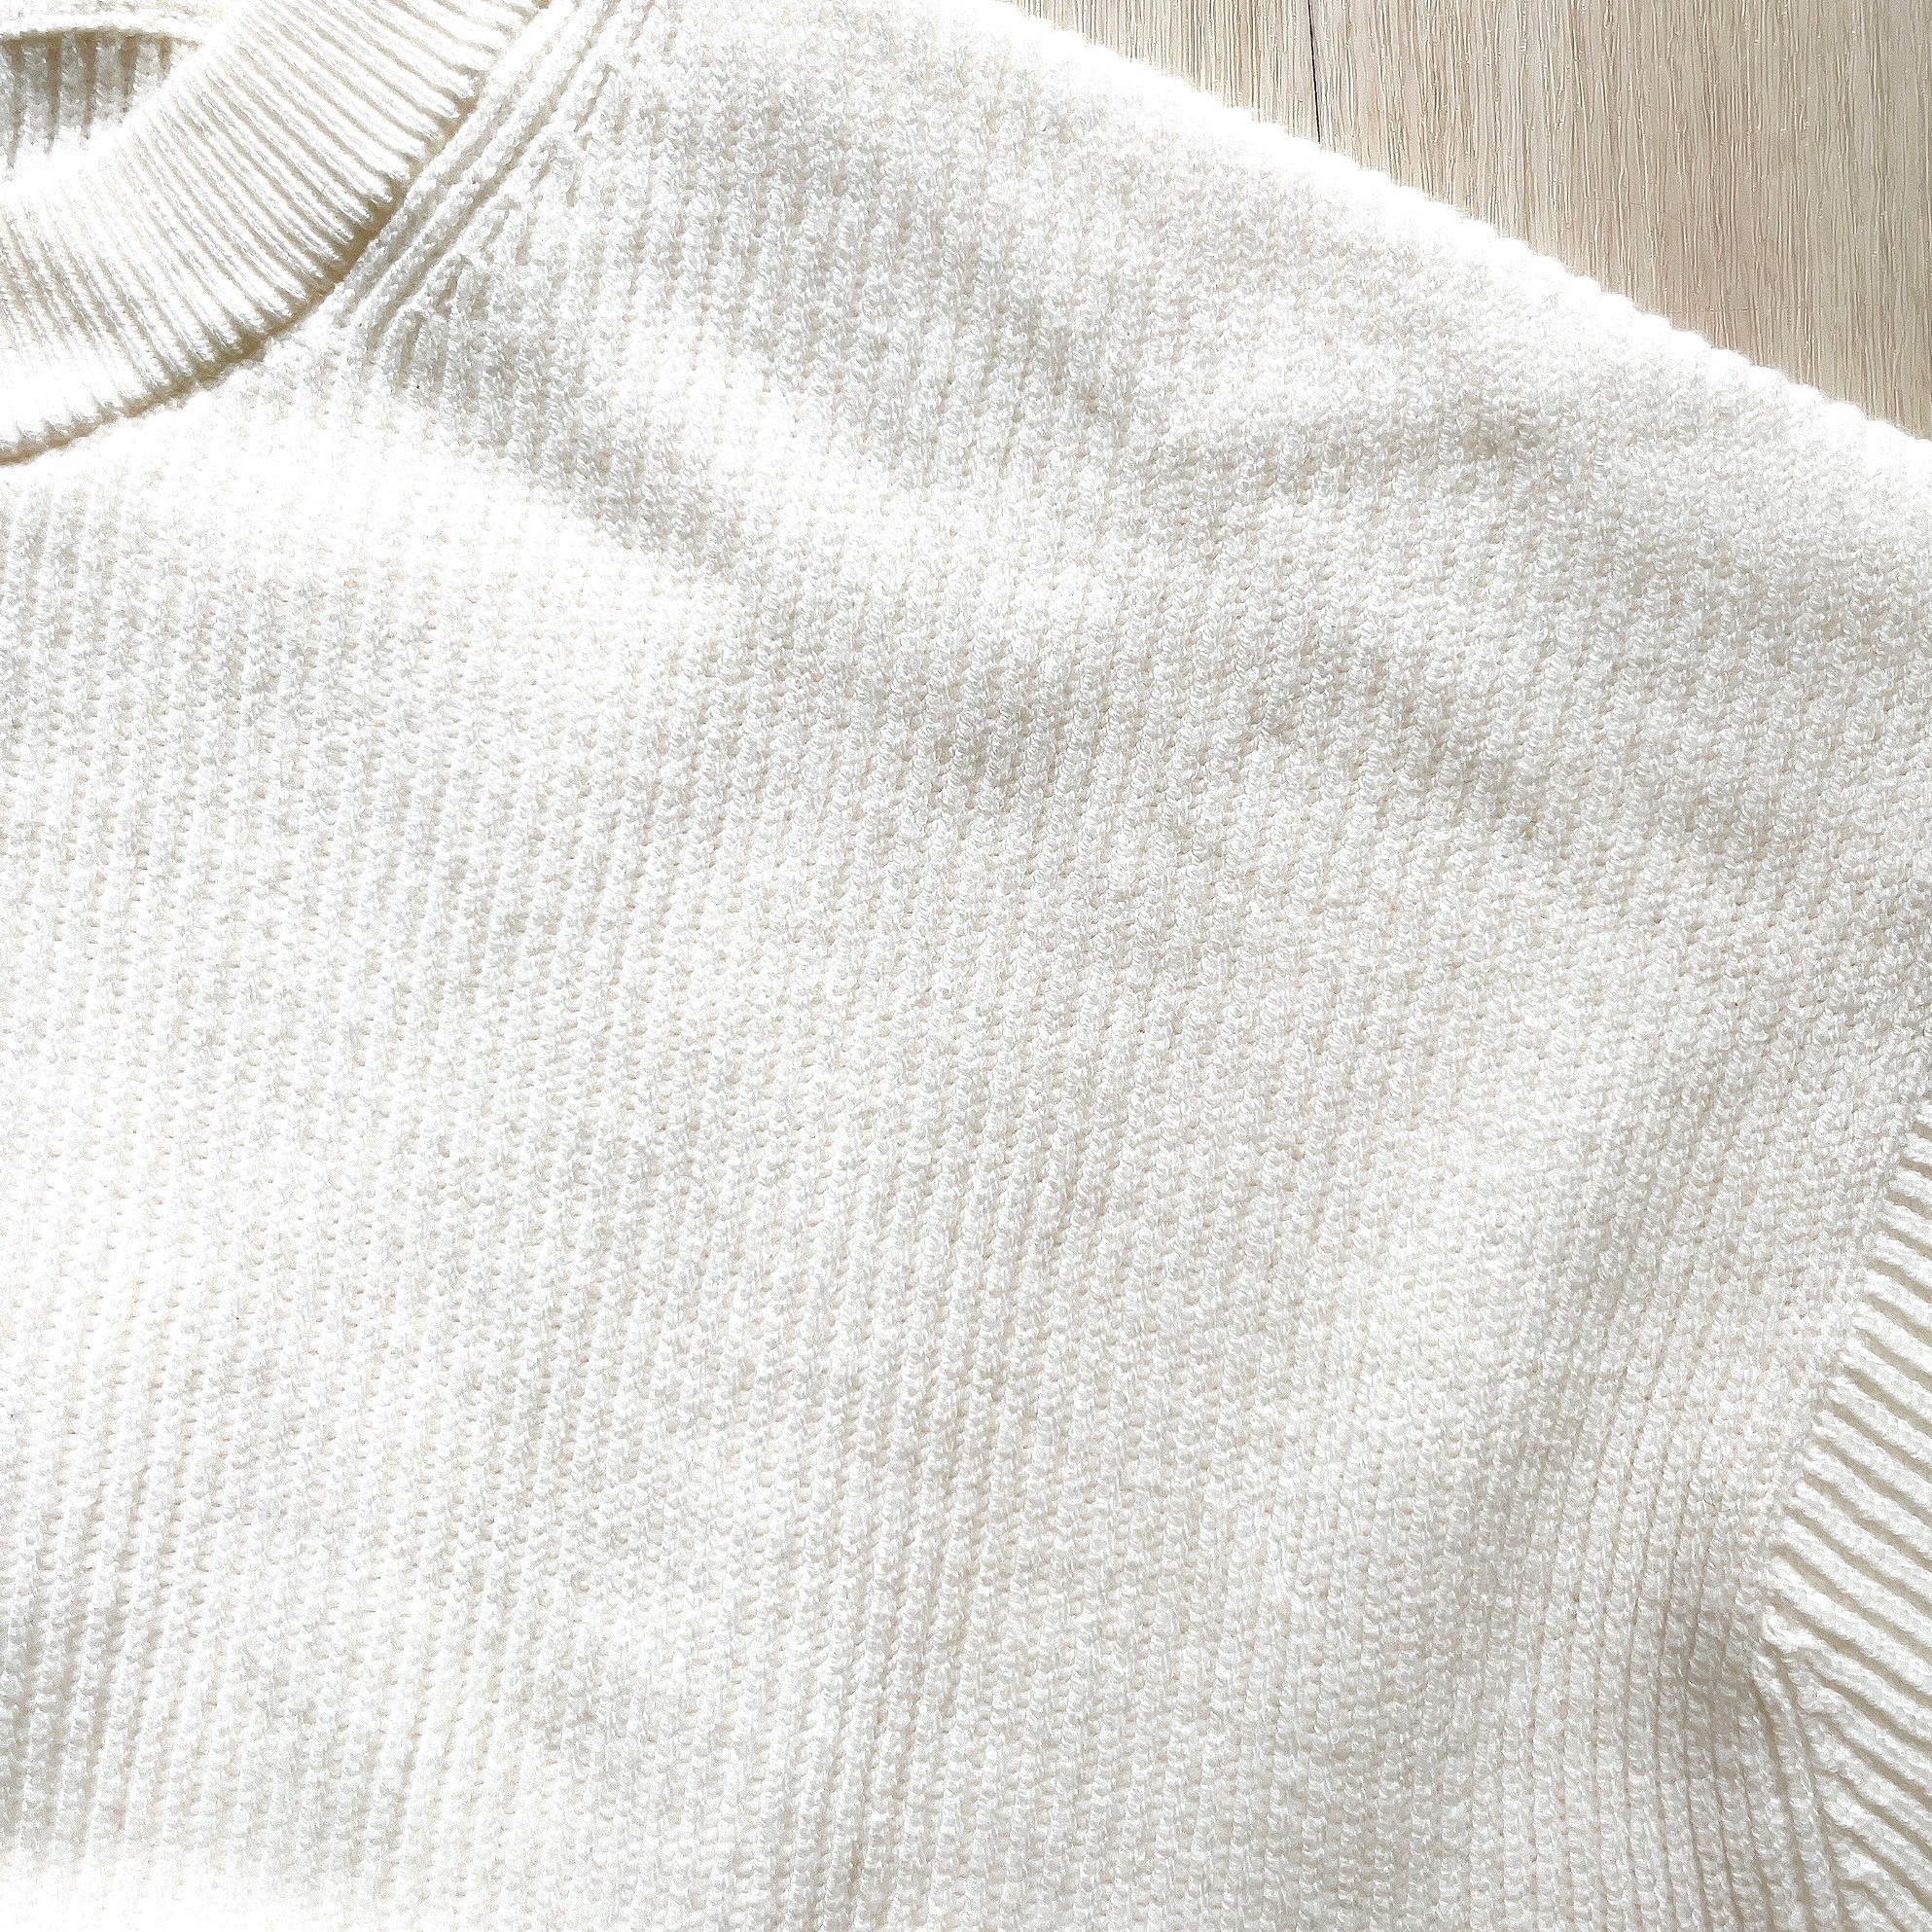 無印良品のオススメのセーター「婦人 洗える畦編みショート丈クルーネックセーター」